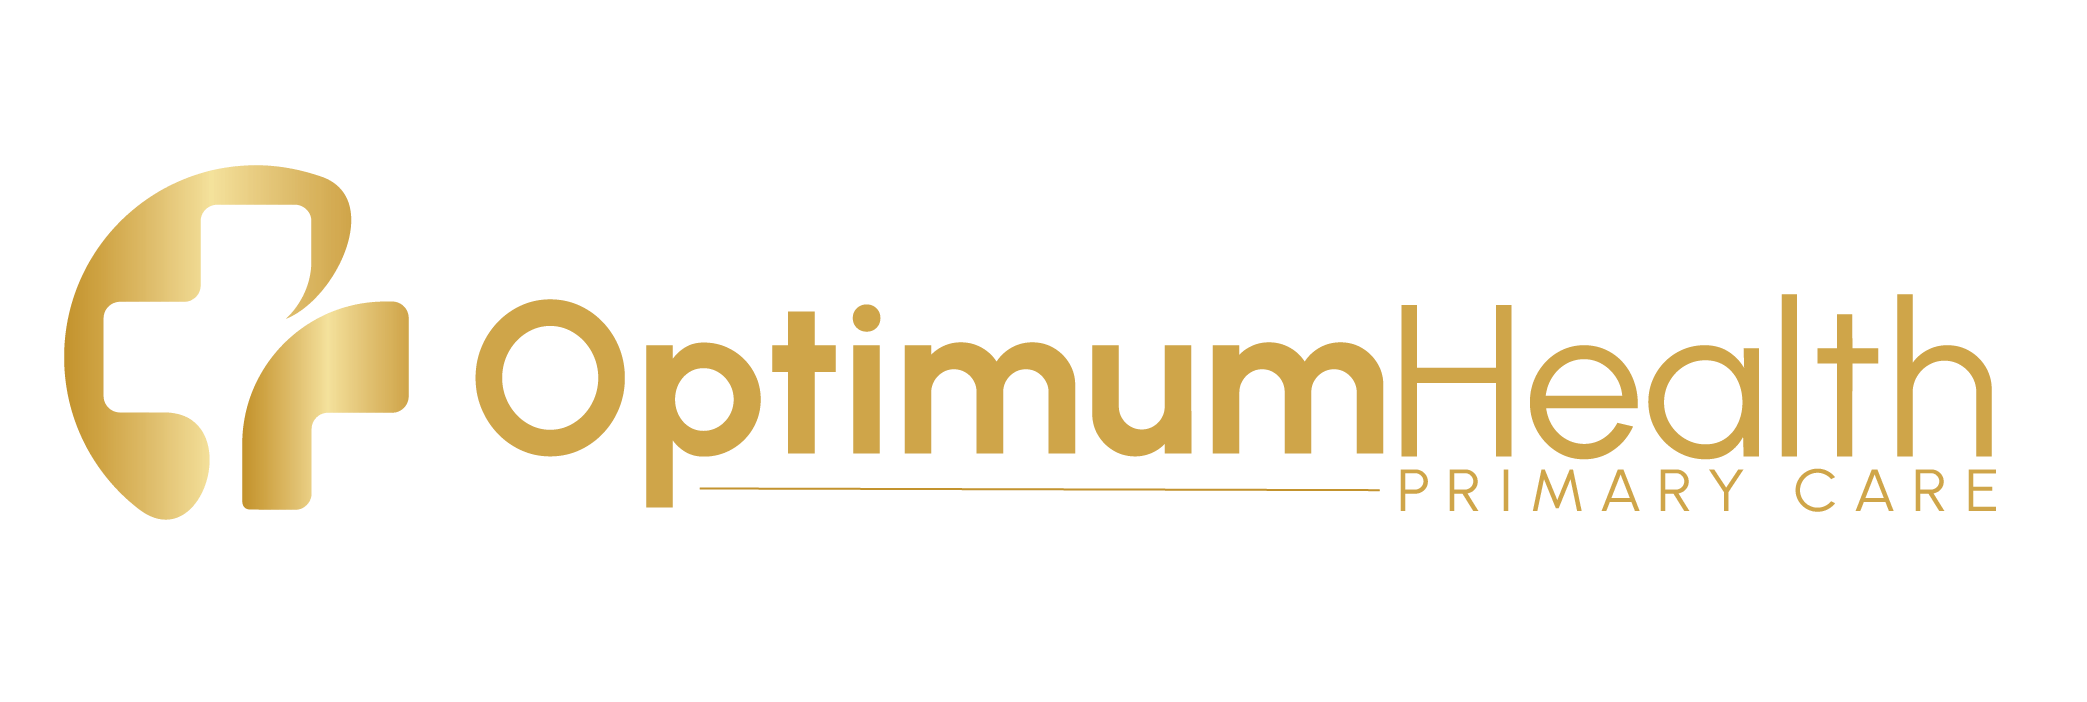 Optimum Health Primary Care